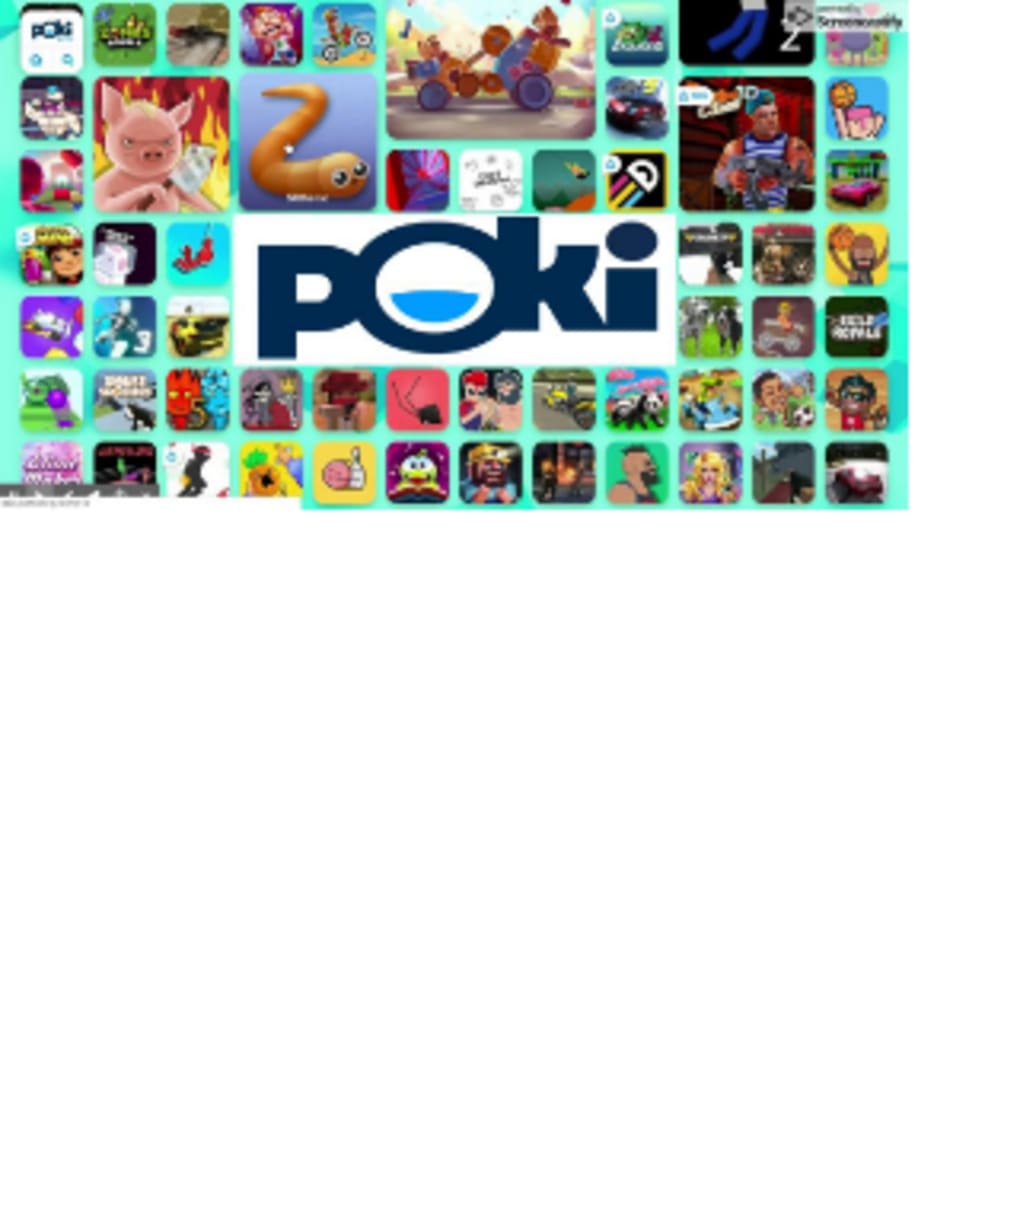 Download Poki Jogos Online - Arcade, Corrida, RPG e Ação android on PC